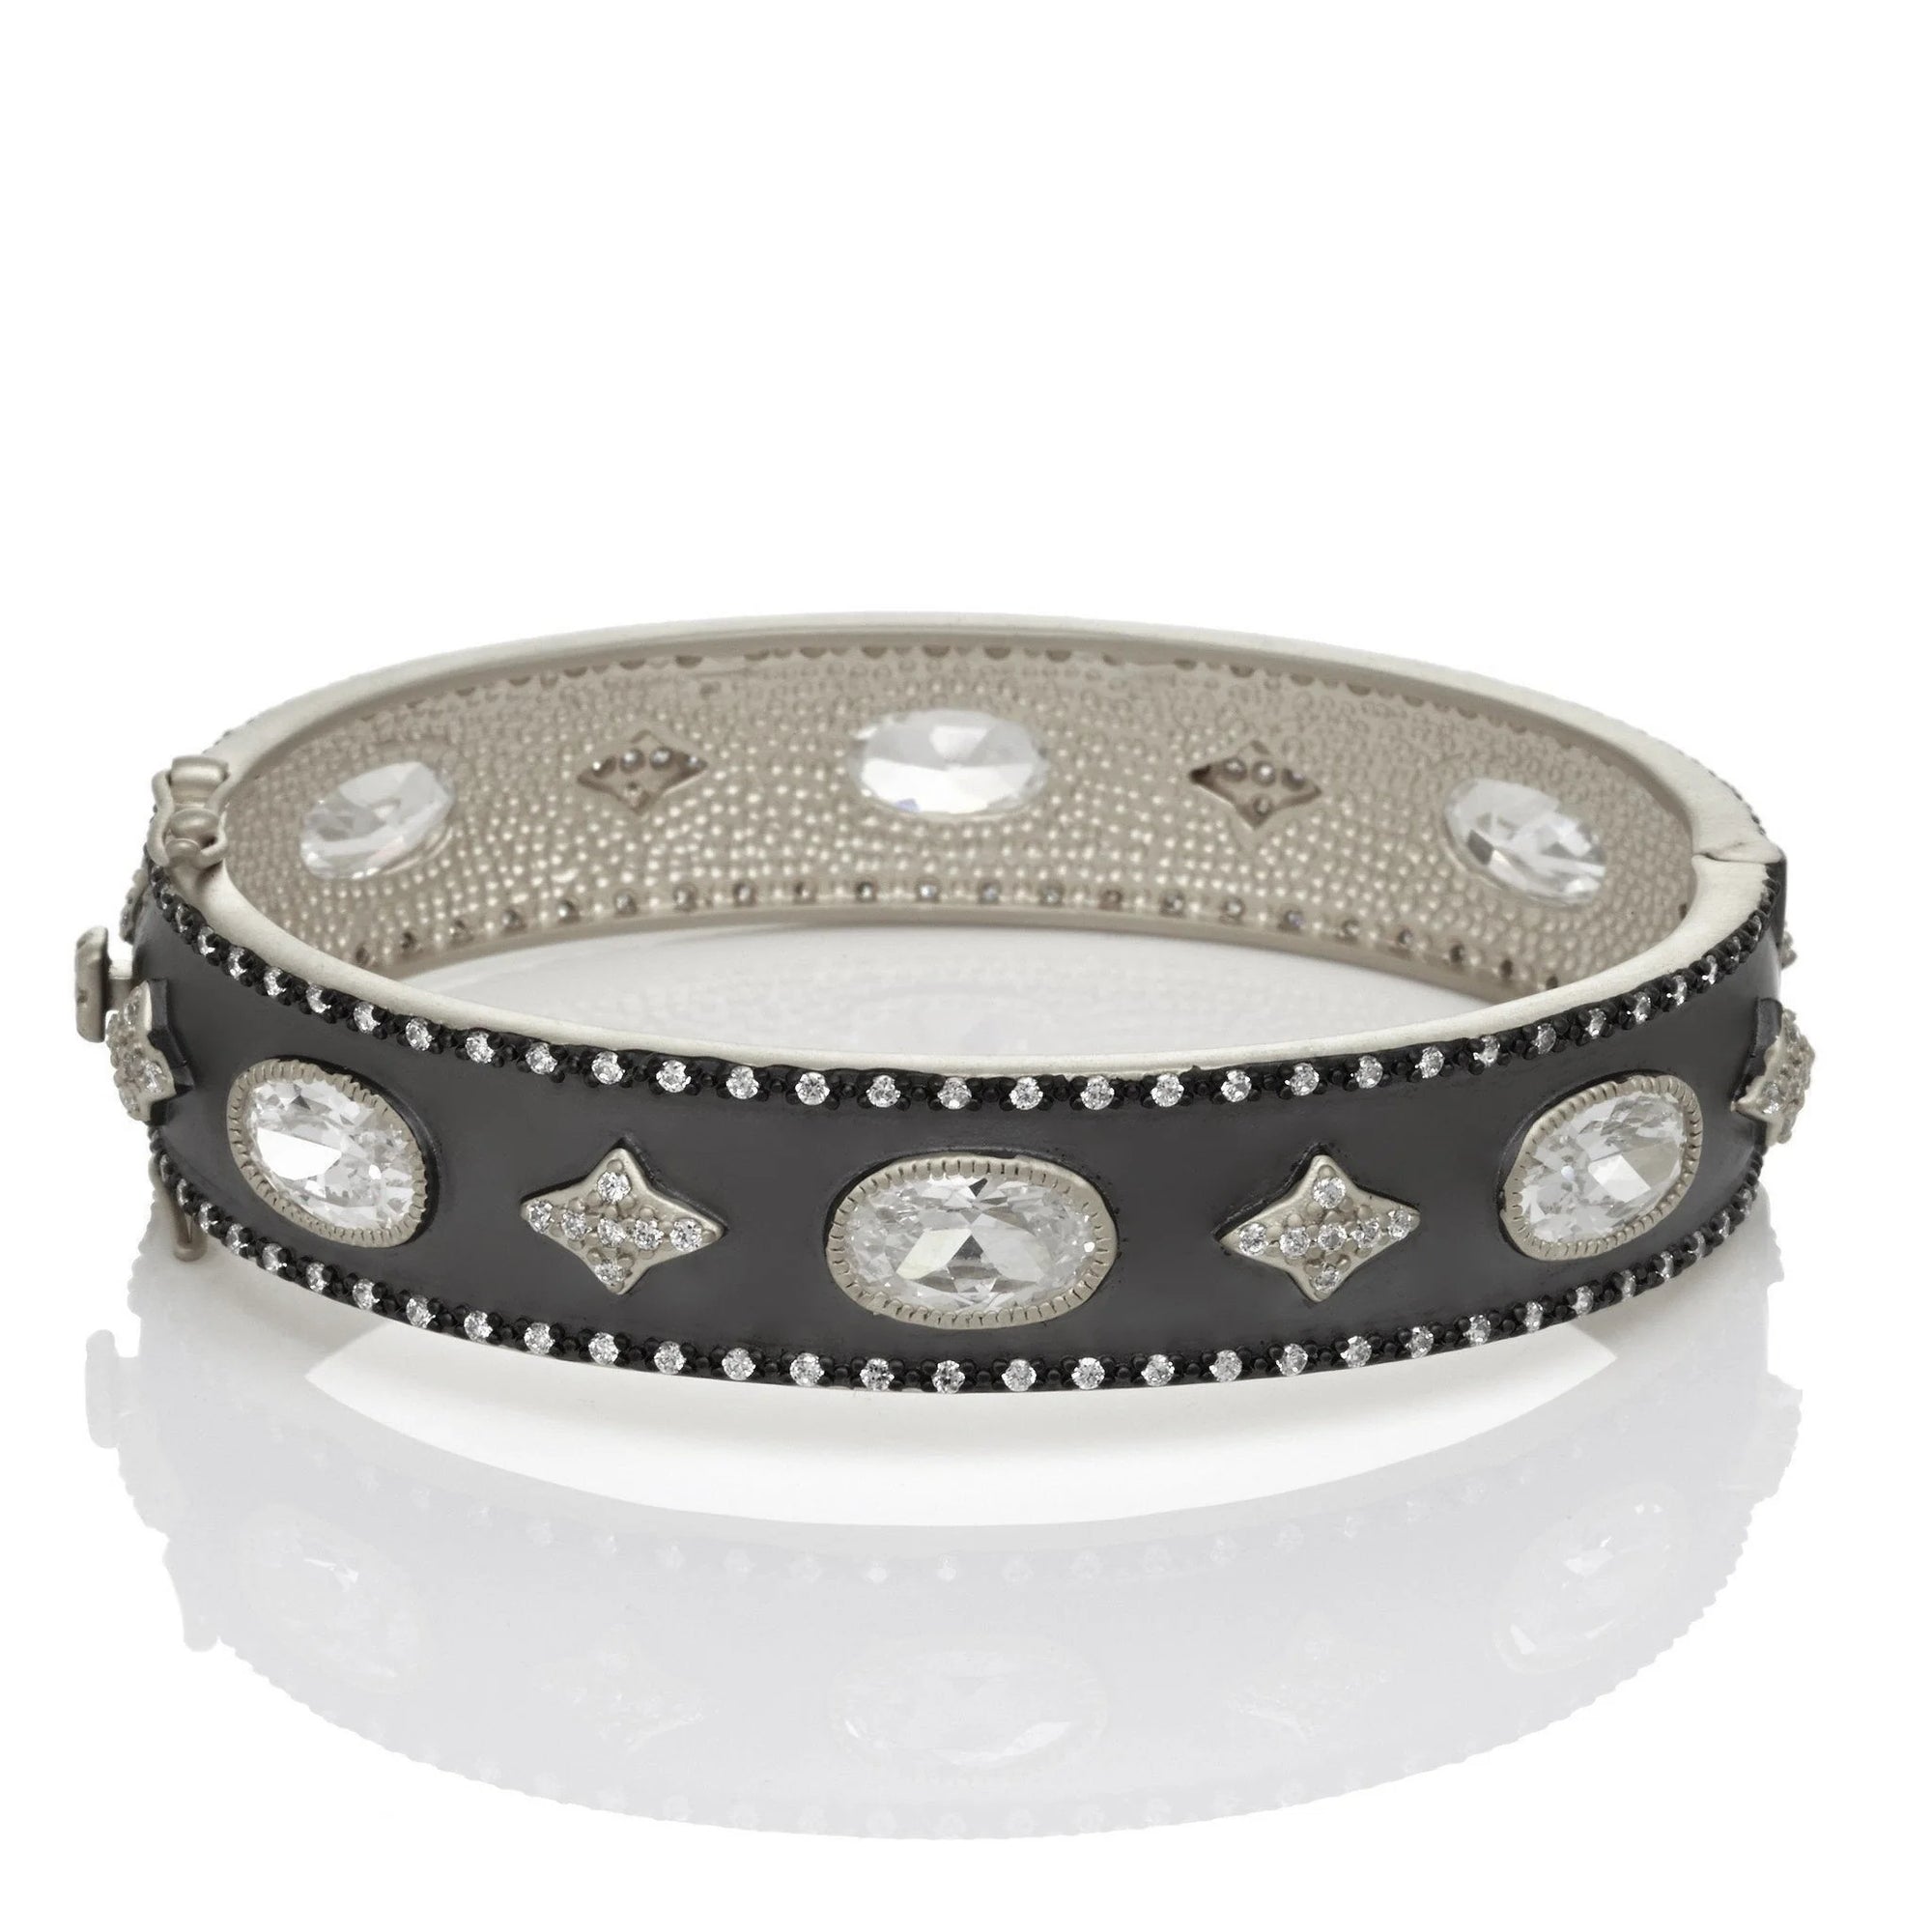 Freida Rothman "Oh So Gorgeous Wide Hinge Bangle Bracelet"